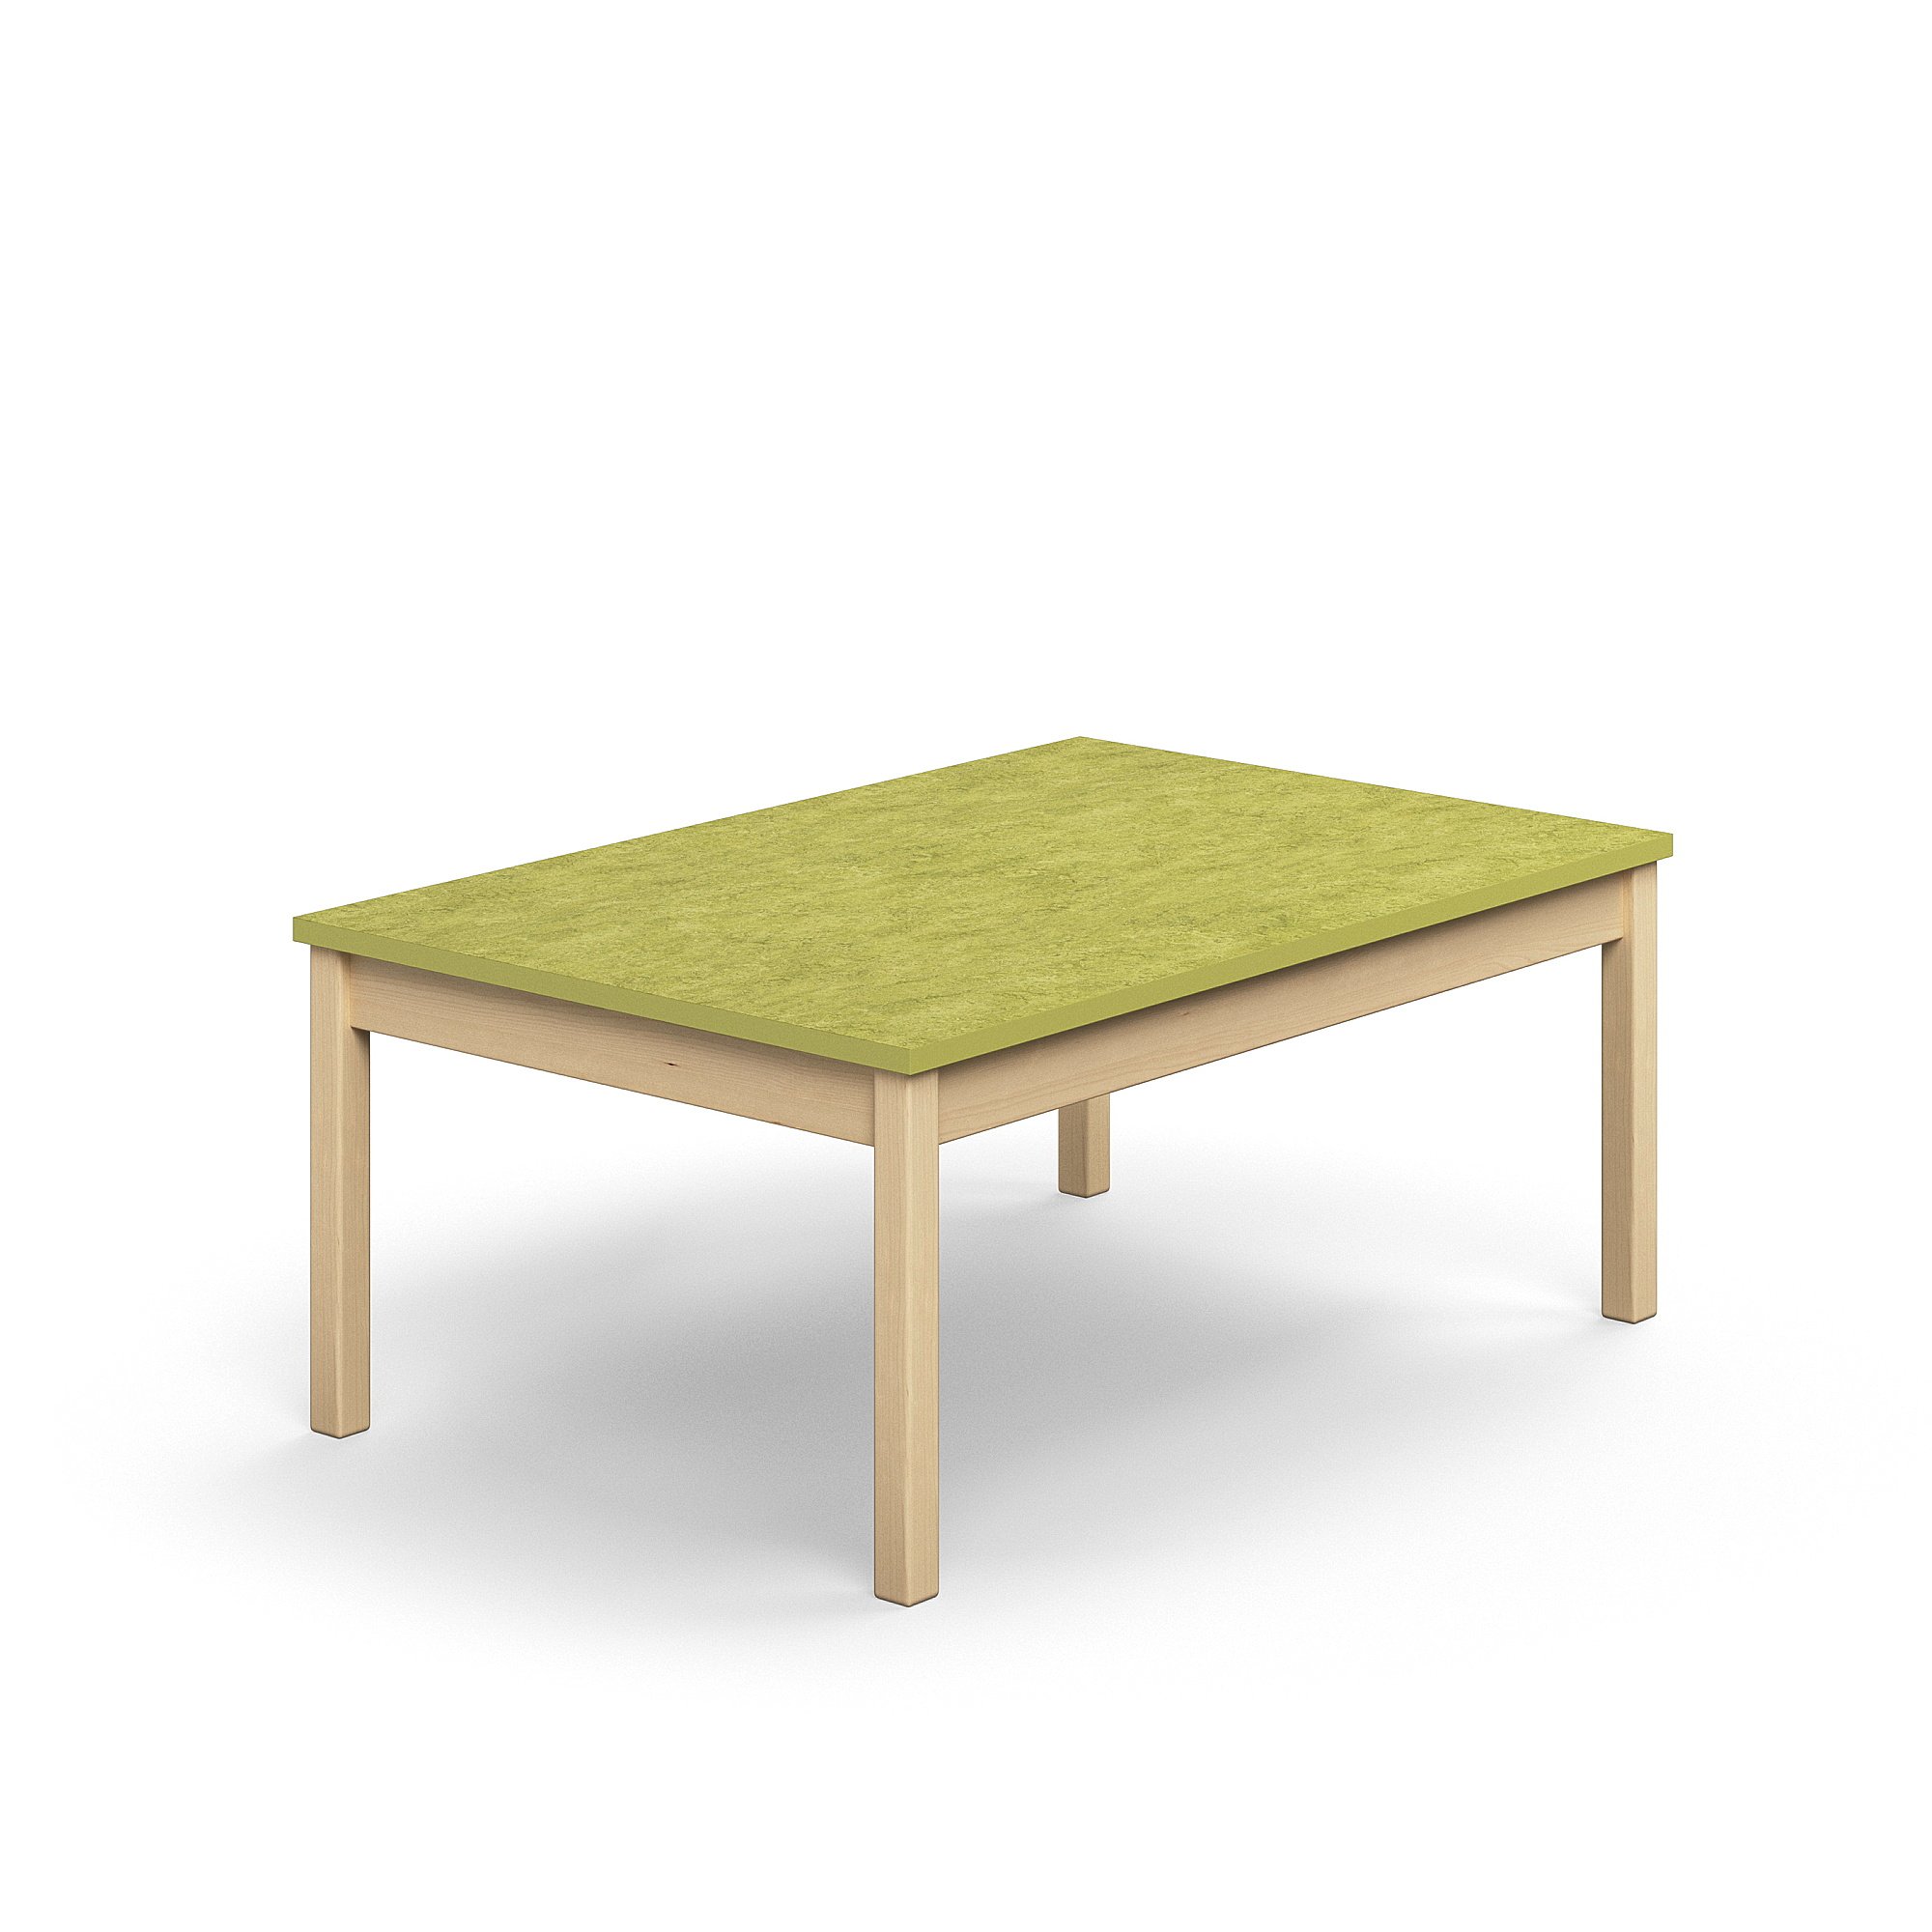 Stůl DECIBEL, 1200x800x530 mm, akustické linoleum, bříza/limetkově zelená